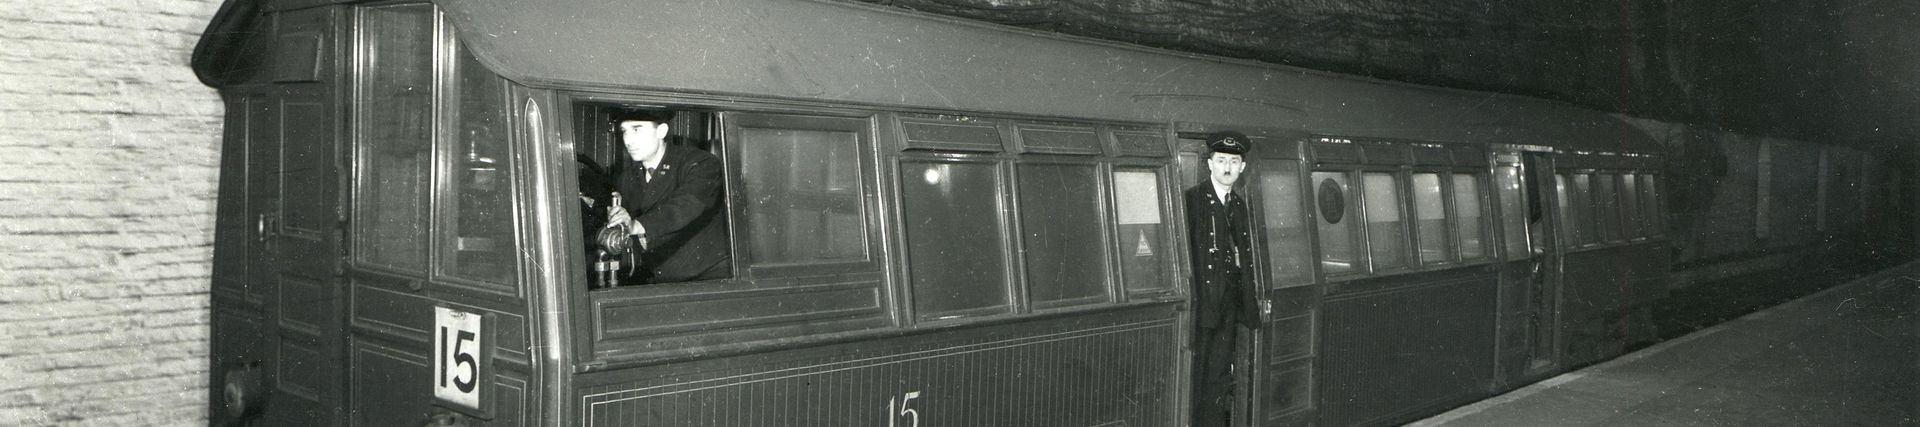 Waterloo & City Railway, seen at Waterloo station platform by Southern Railway, Jan 1940 - Mar 1940